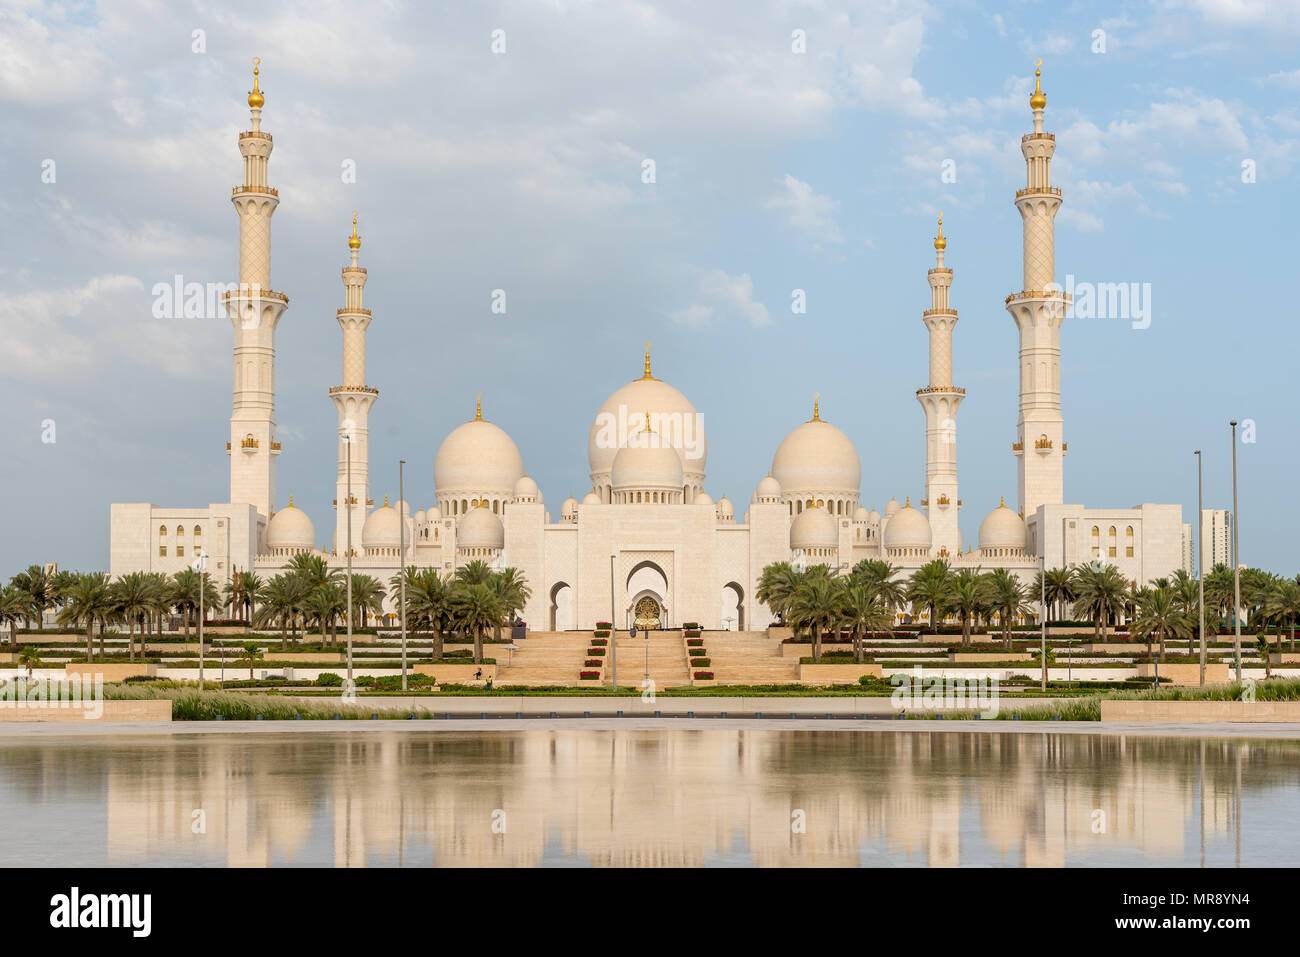 Abu Dhabi, United Arab Emirates. 17, May, 2018.  Sunrise at Sheikh Zayed Grand Mosque in Abu Dhabi, capital city of the United Arab Emirates Stock Photo